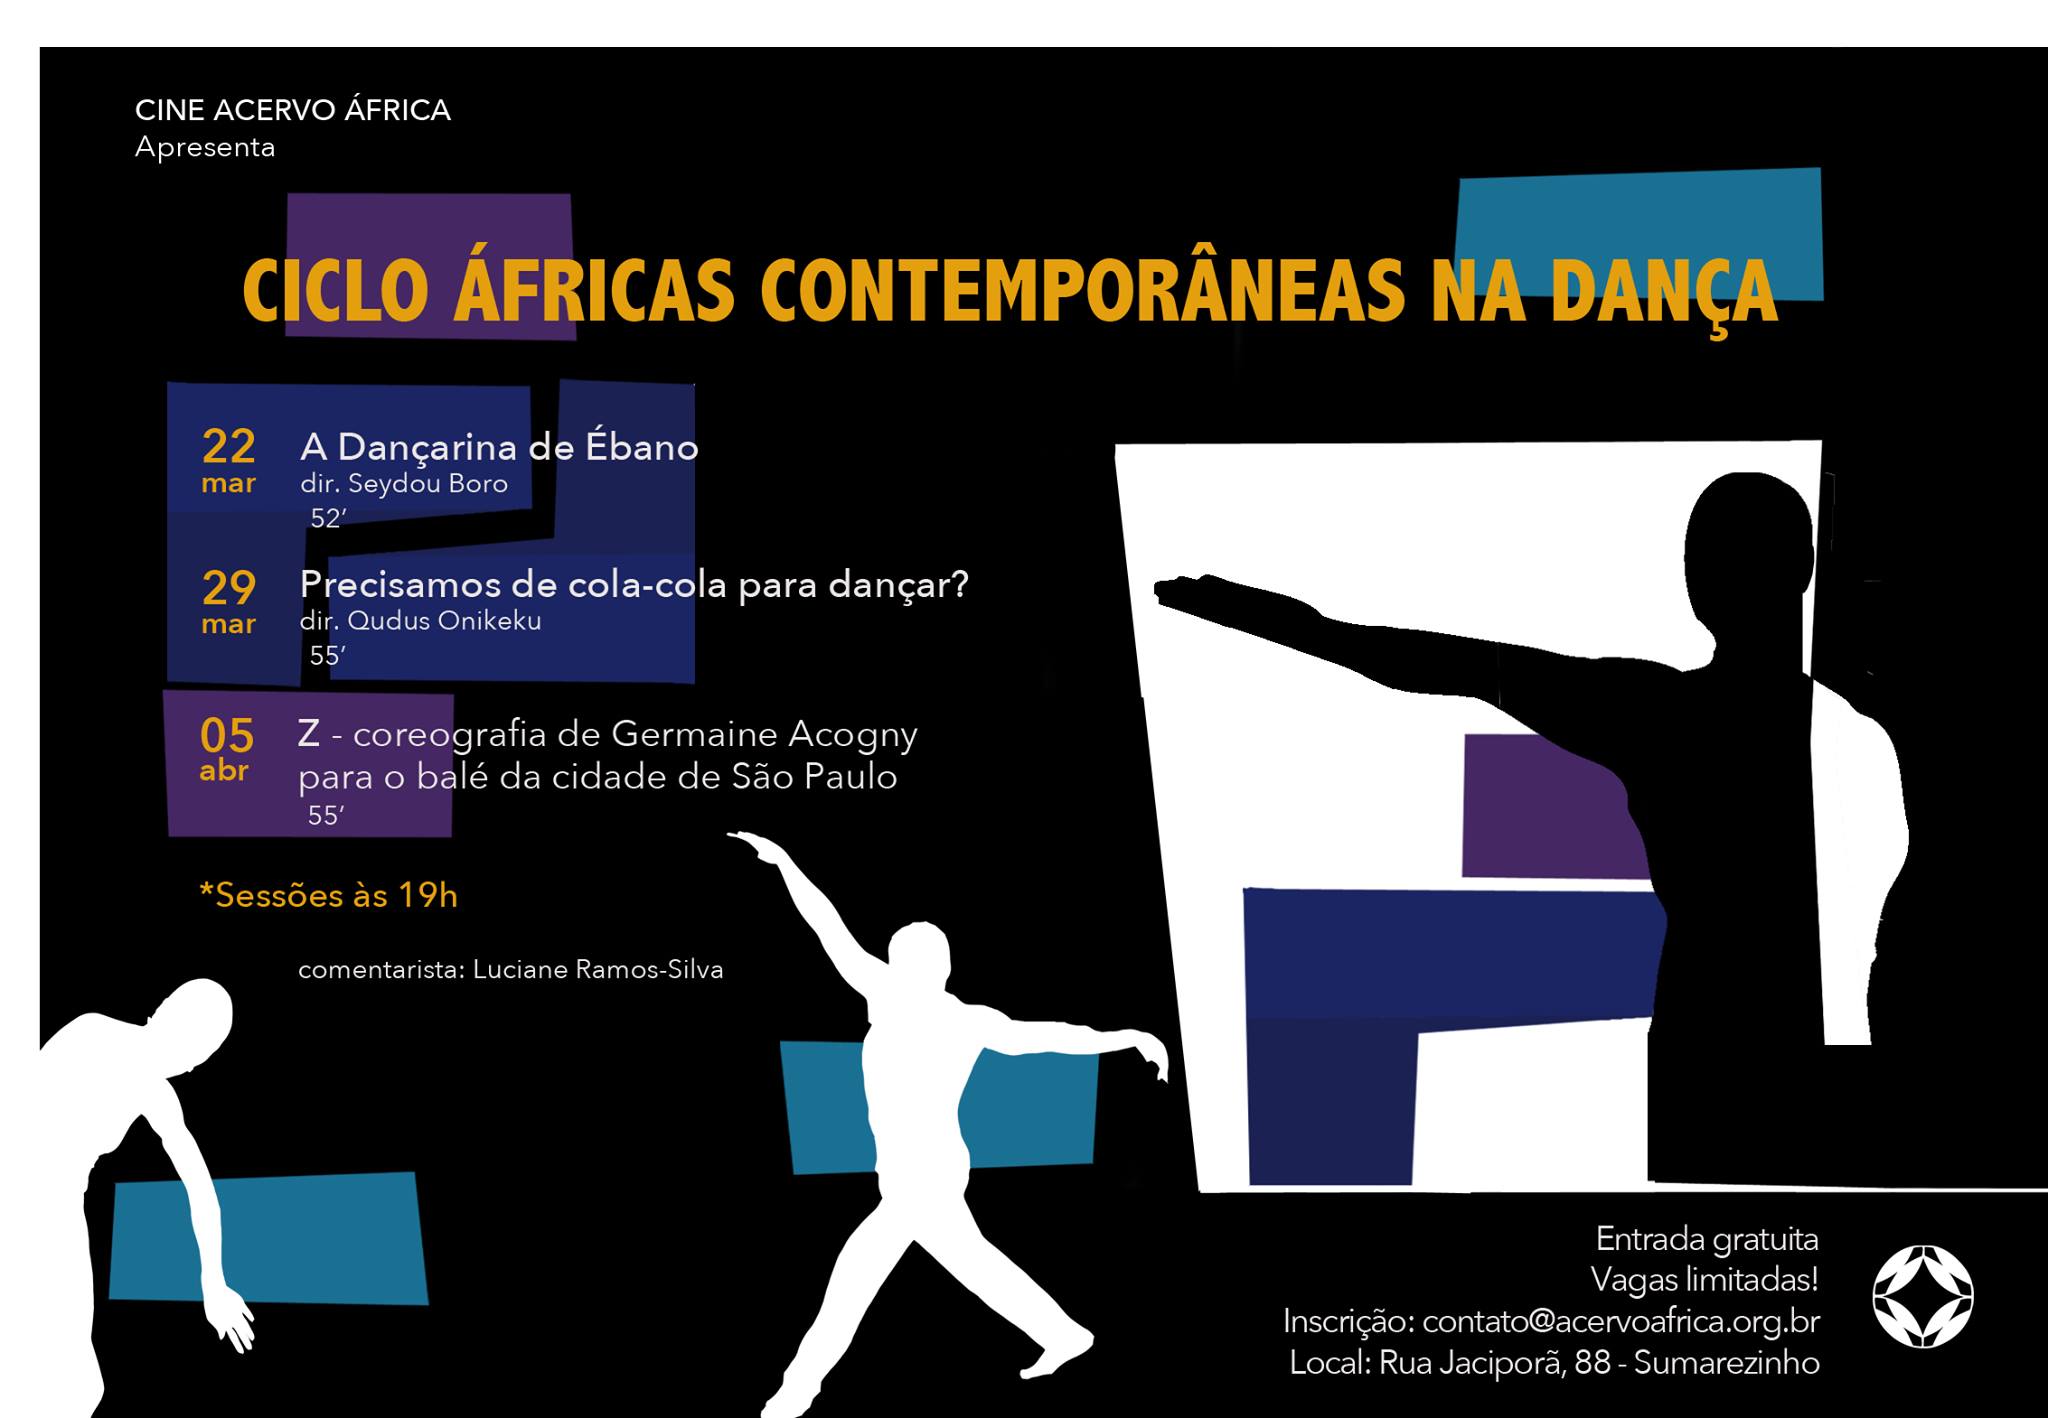 Ciclo Áfricas Contemporâneas na dança